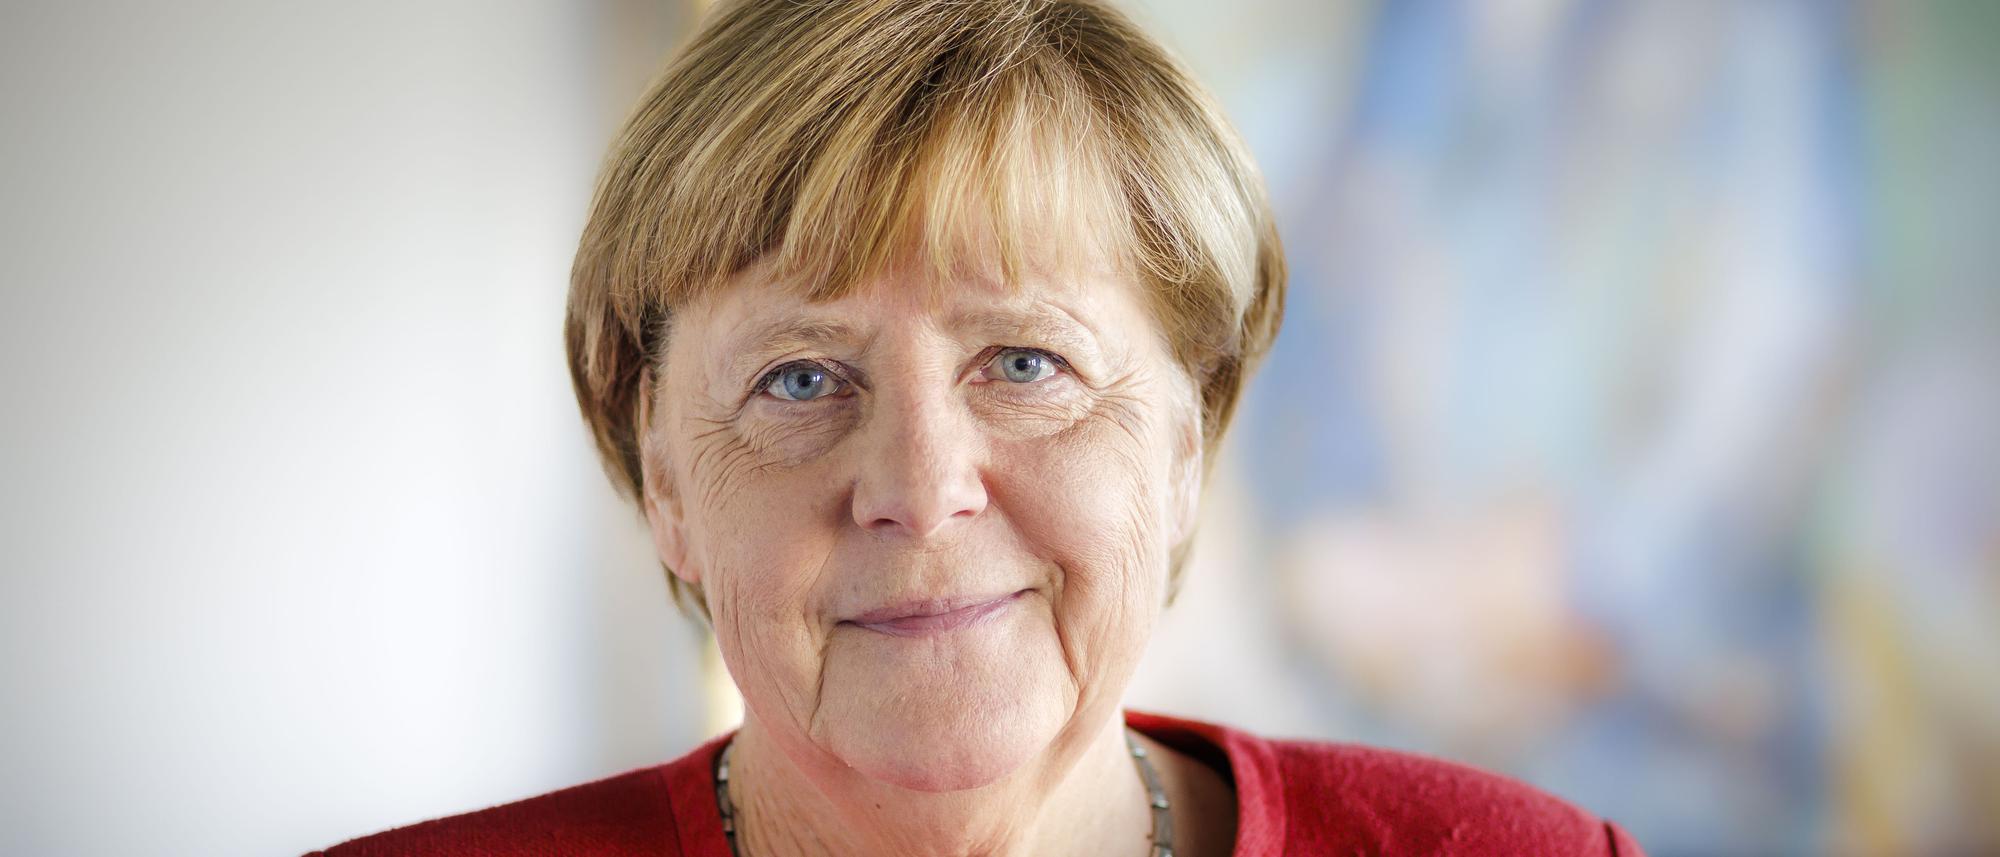  Angela Merkel Hintergrundbild 2000x857. Hair & Make Up Artist“: Bund Zahlt 57.000 Euro Für Merkels Styling